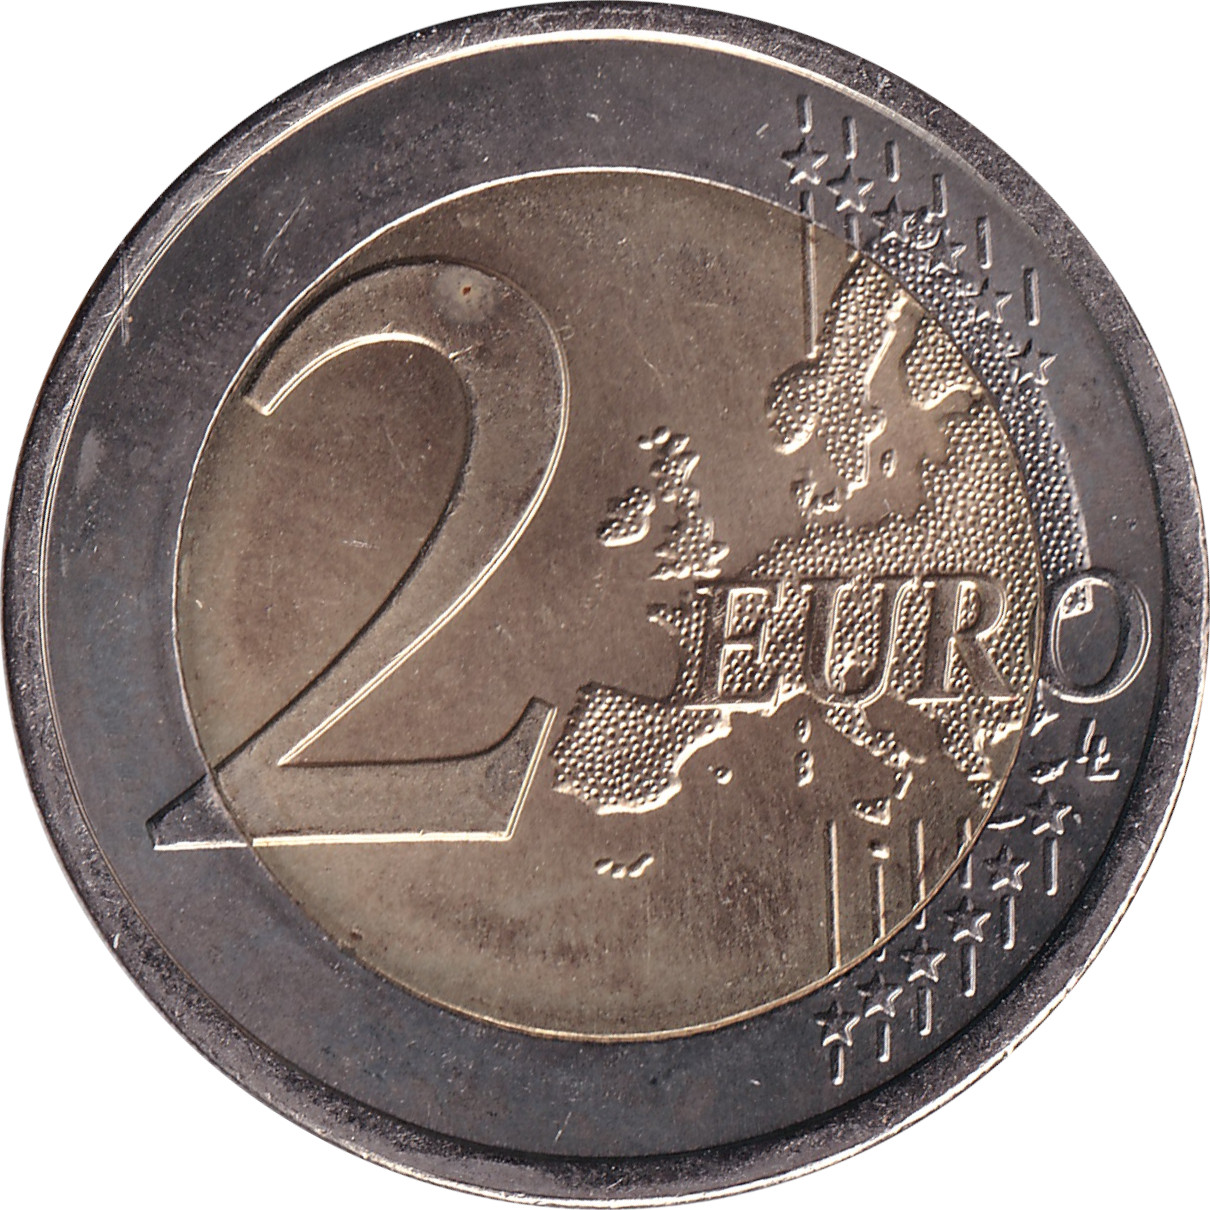 2 euro - Guimarães